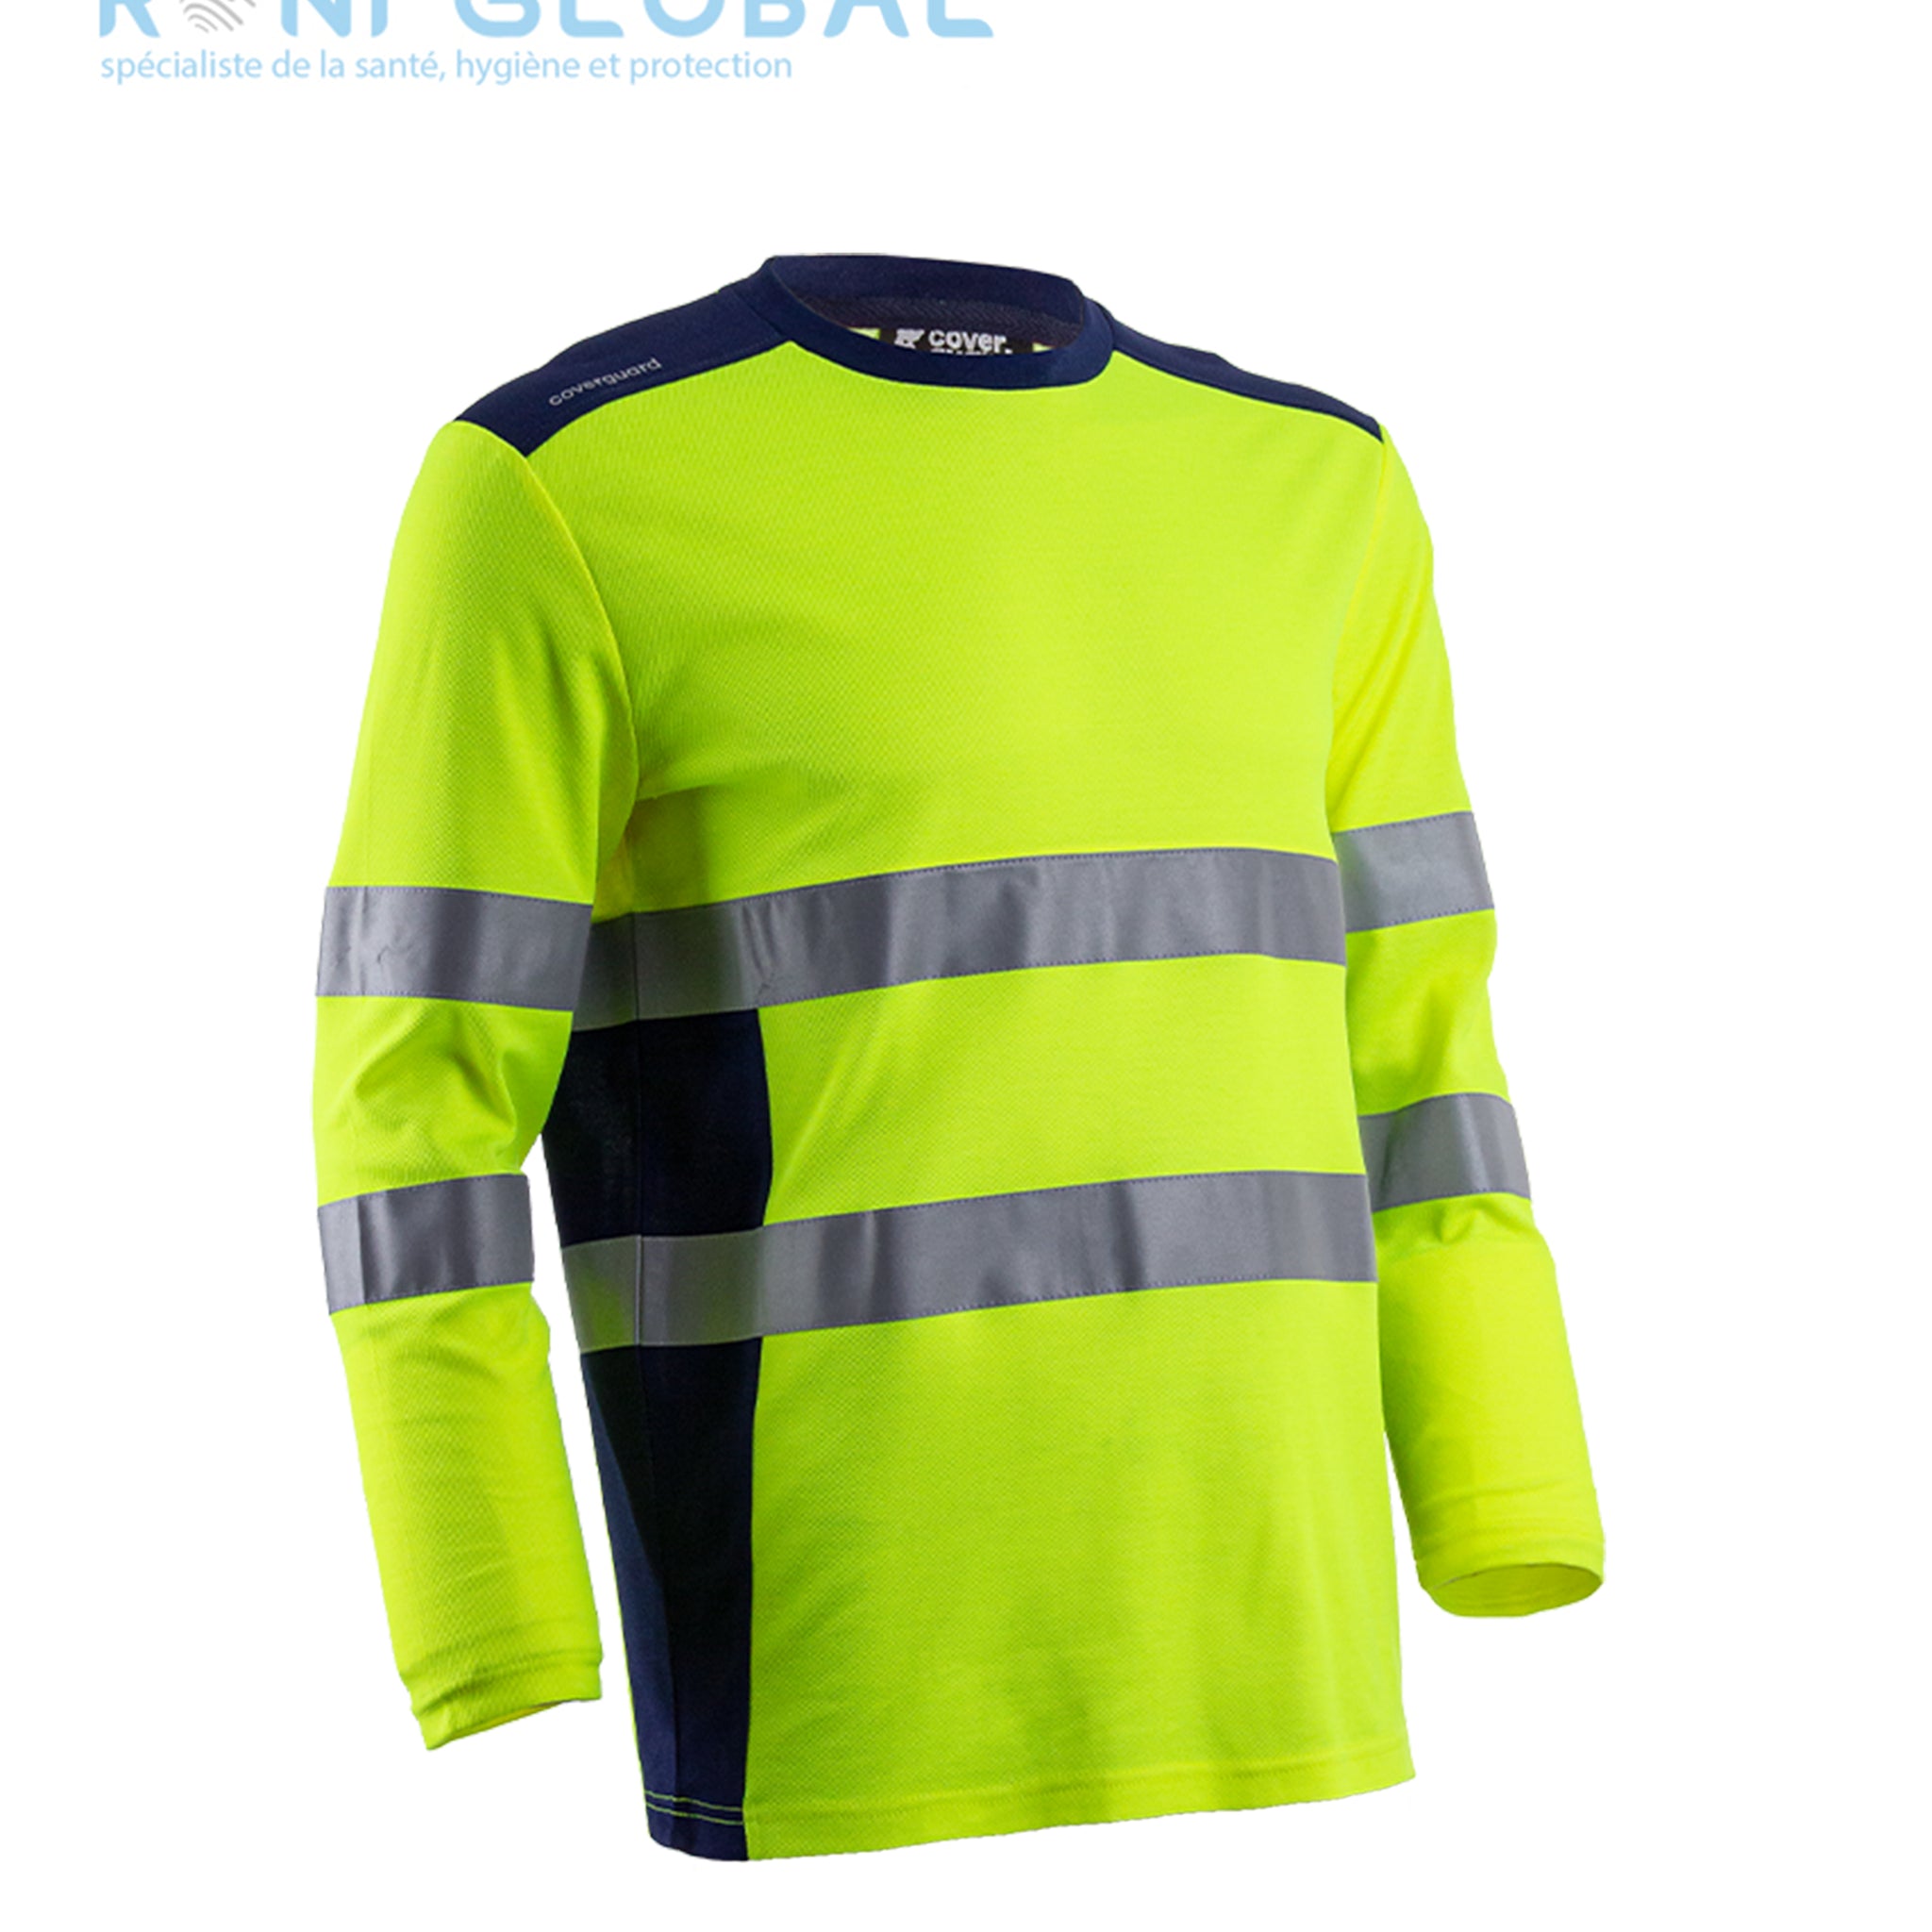 T-shirt de sécurité haute visibilité, manches longues anti-UV UPF 35+ en coton et polyester CLASS 3 - RIKKA COVERGUARD